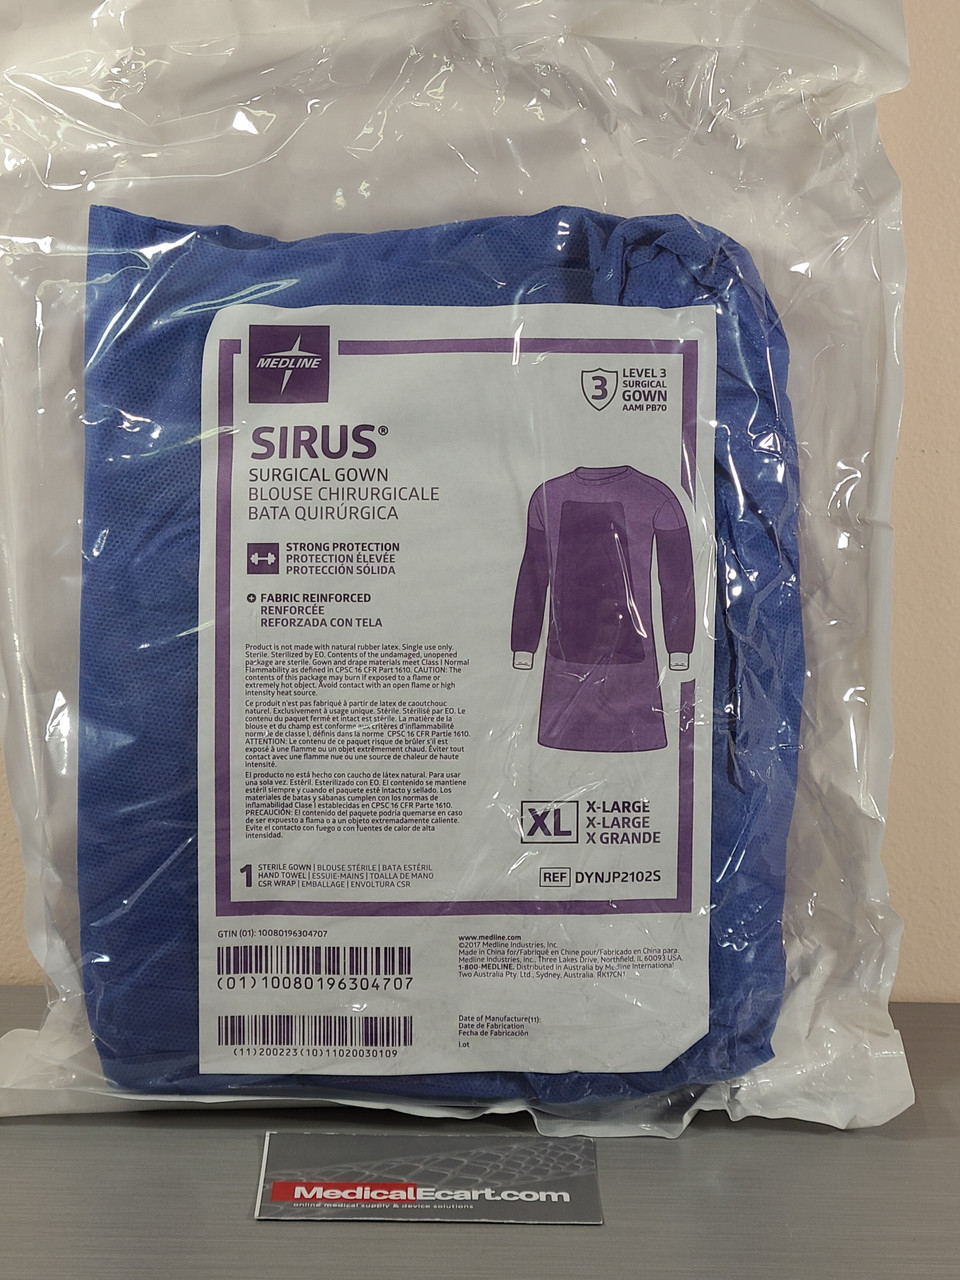 Surgical Gown (Sterilized) - AAMI LEVEL 3 (FDA 510k) | LMI Textiles